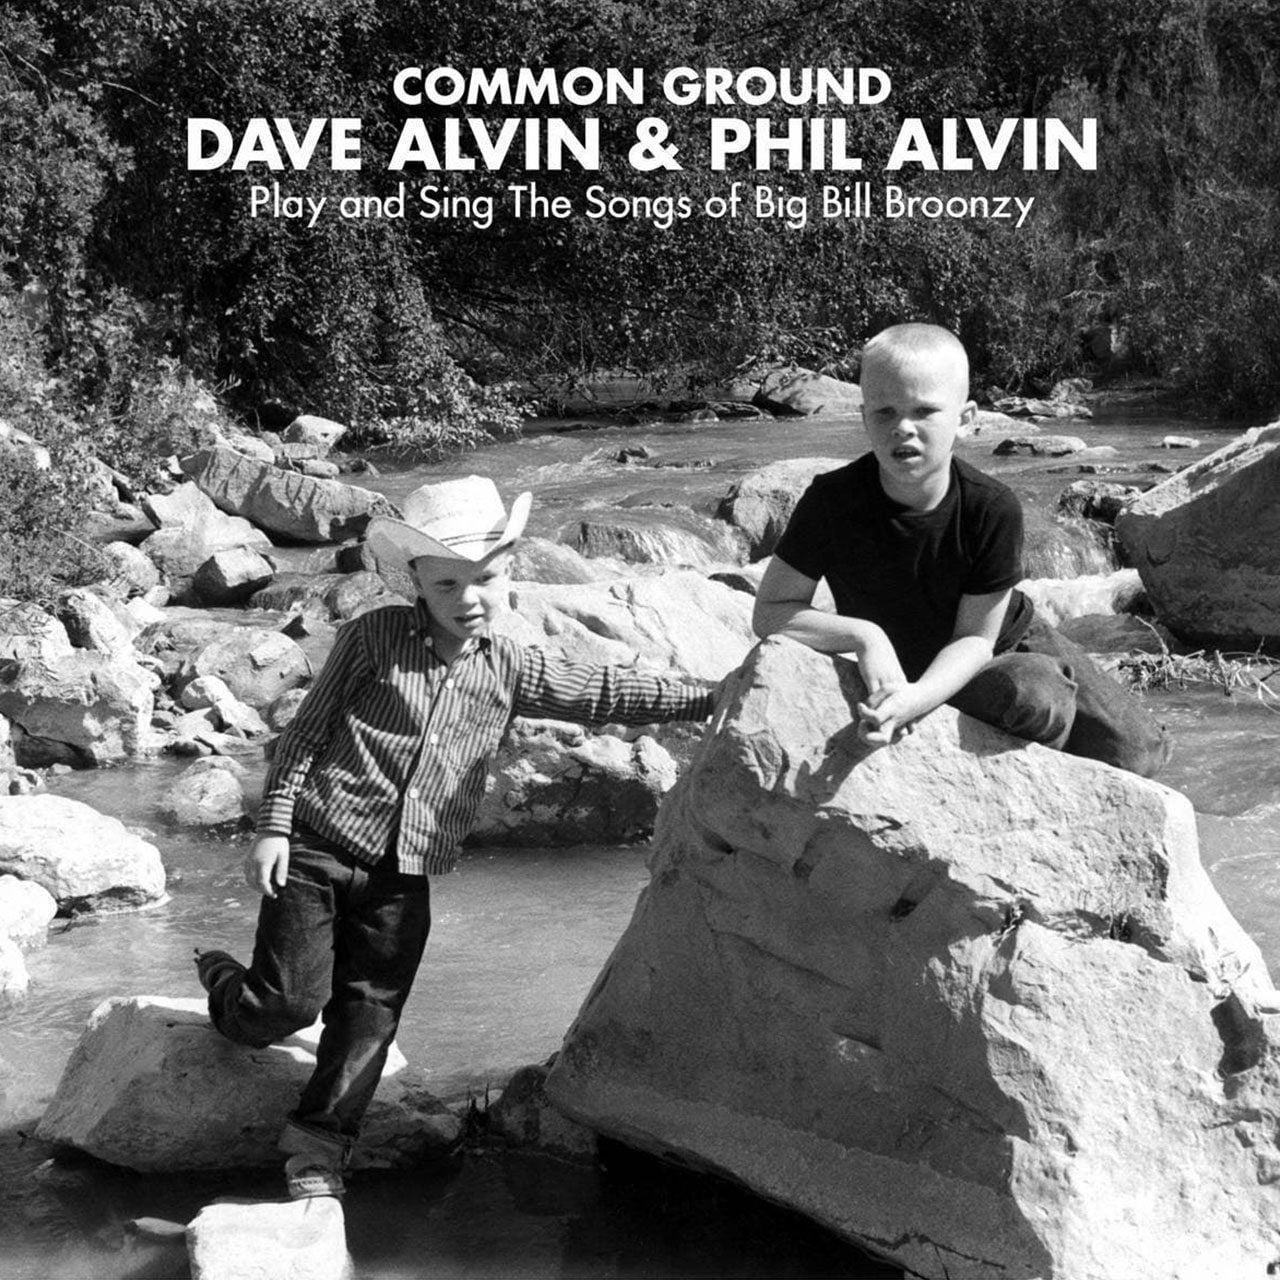 Dave-Alvin-&-Phil-Alvin---“Common-Ground” cover album